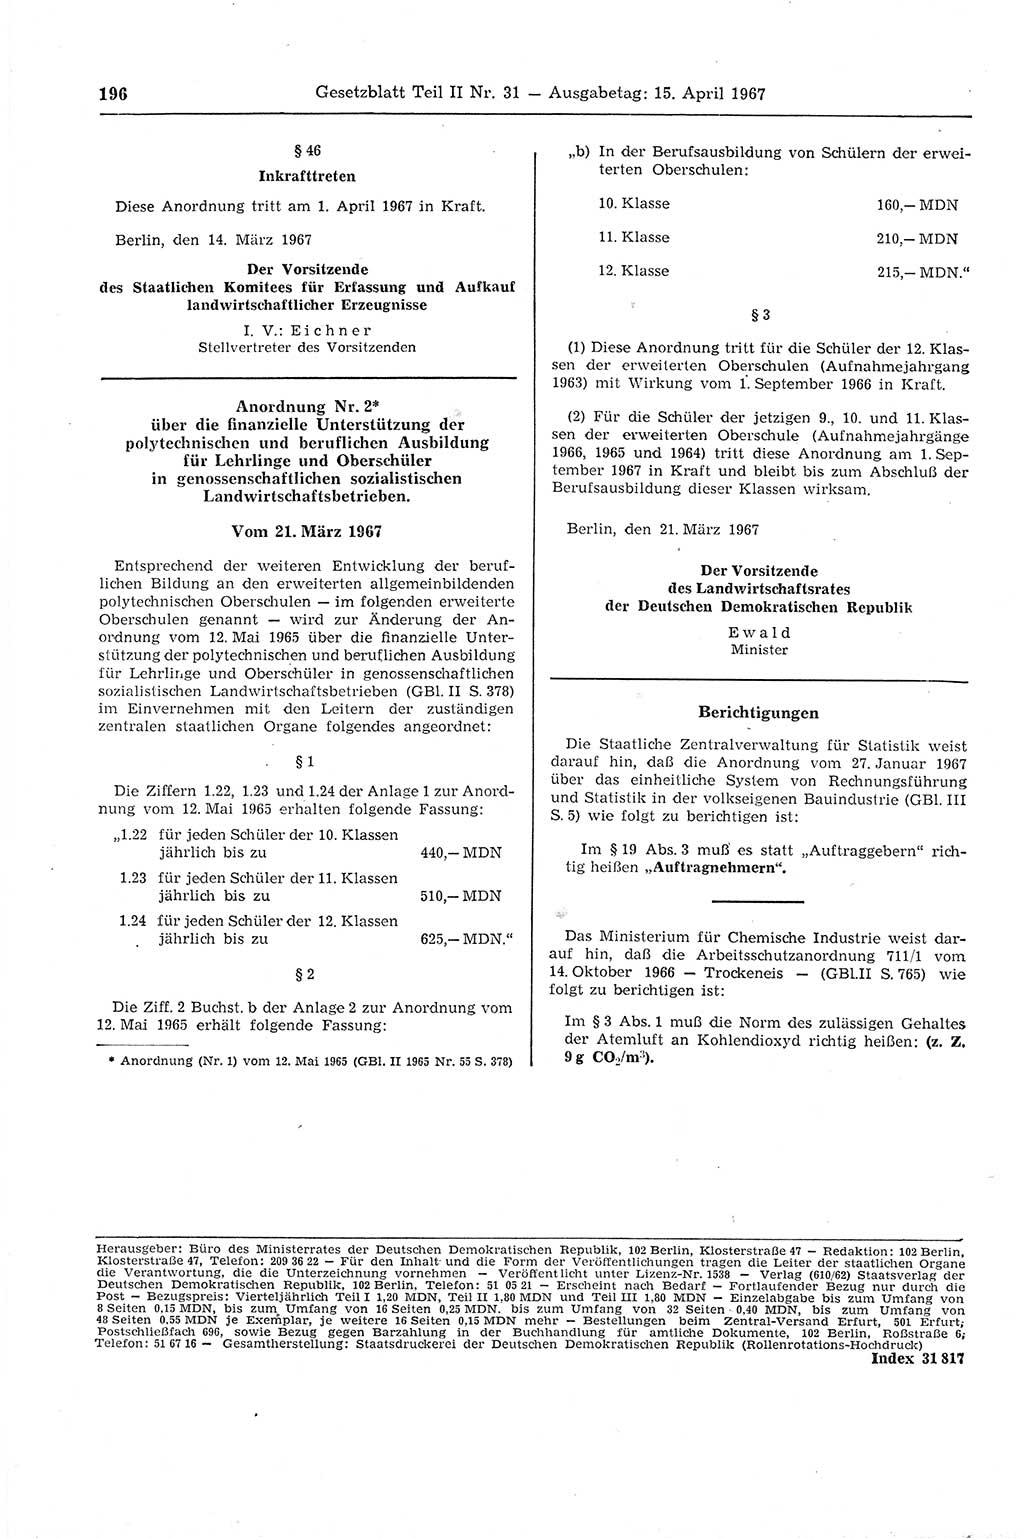 Gesetzblatt (GBl.) der Deutschen Demokratischen Republik (DDR) Teil ⅠⅠ 1967, Seite 196 (GBl. DDR ⅠⅠ 1967, S. 196)